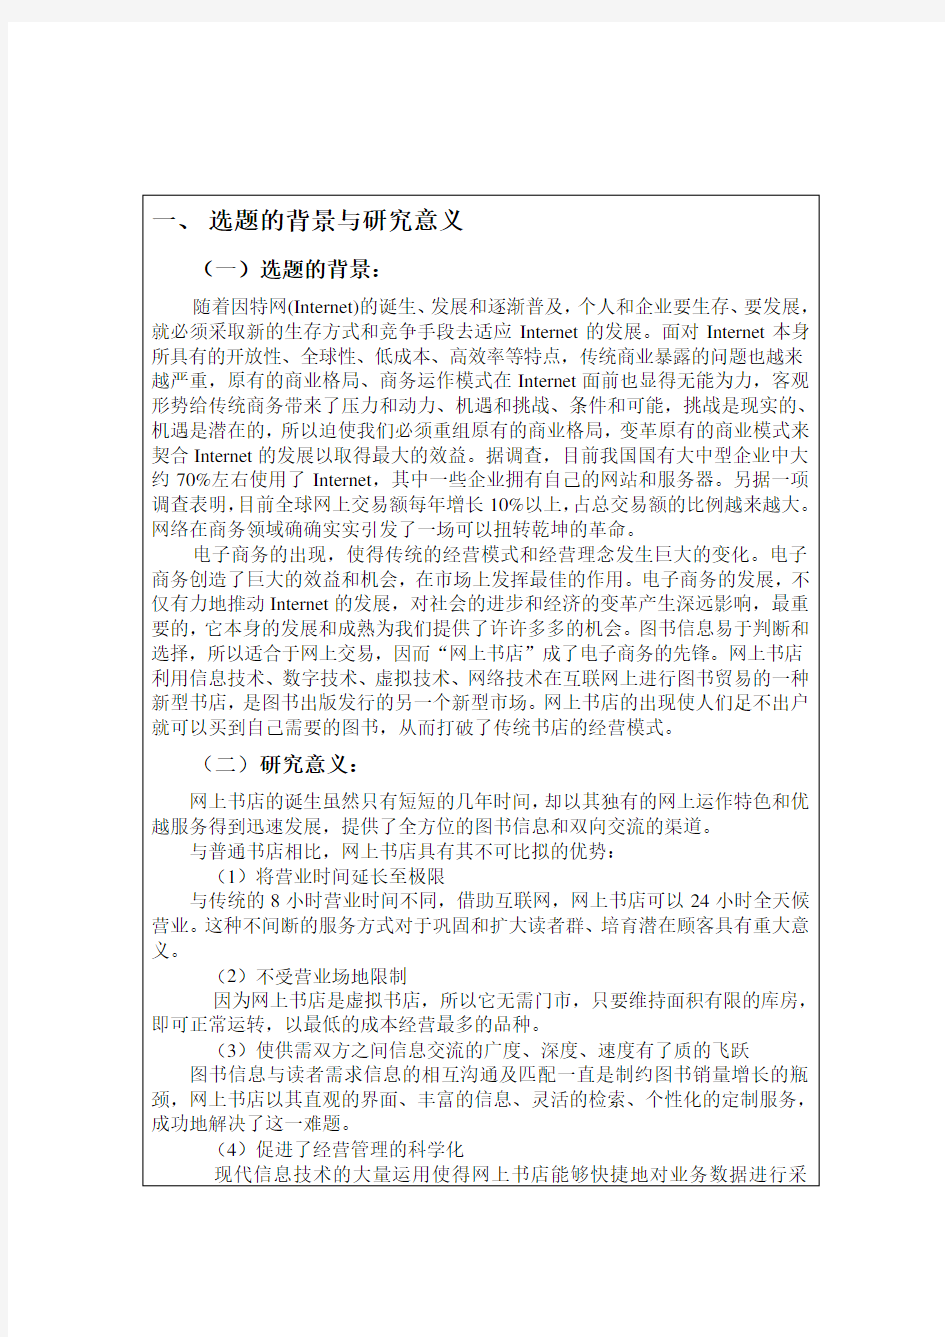 北京理工大学现代远程(继续)教育学院开题报告模版